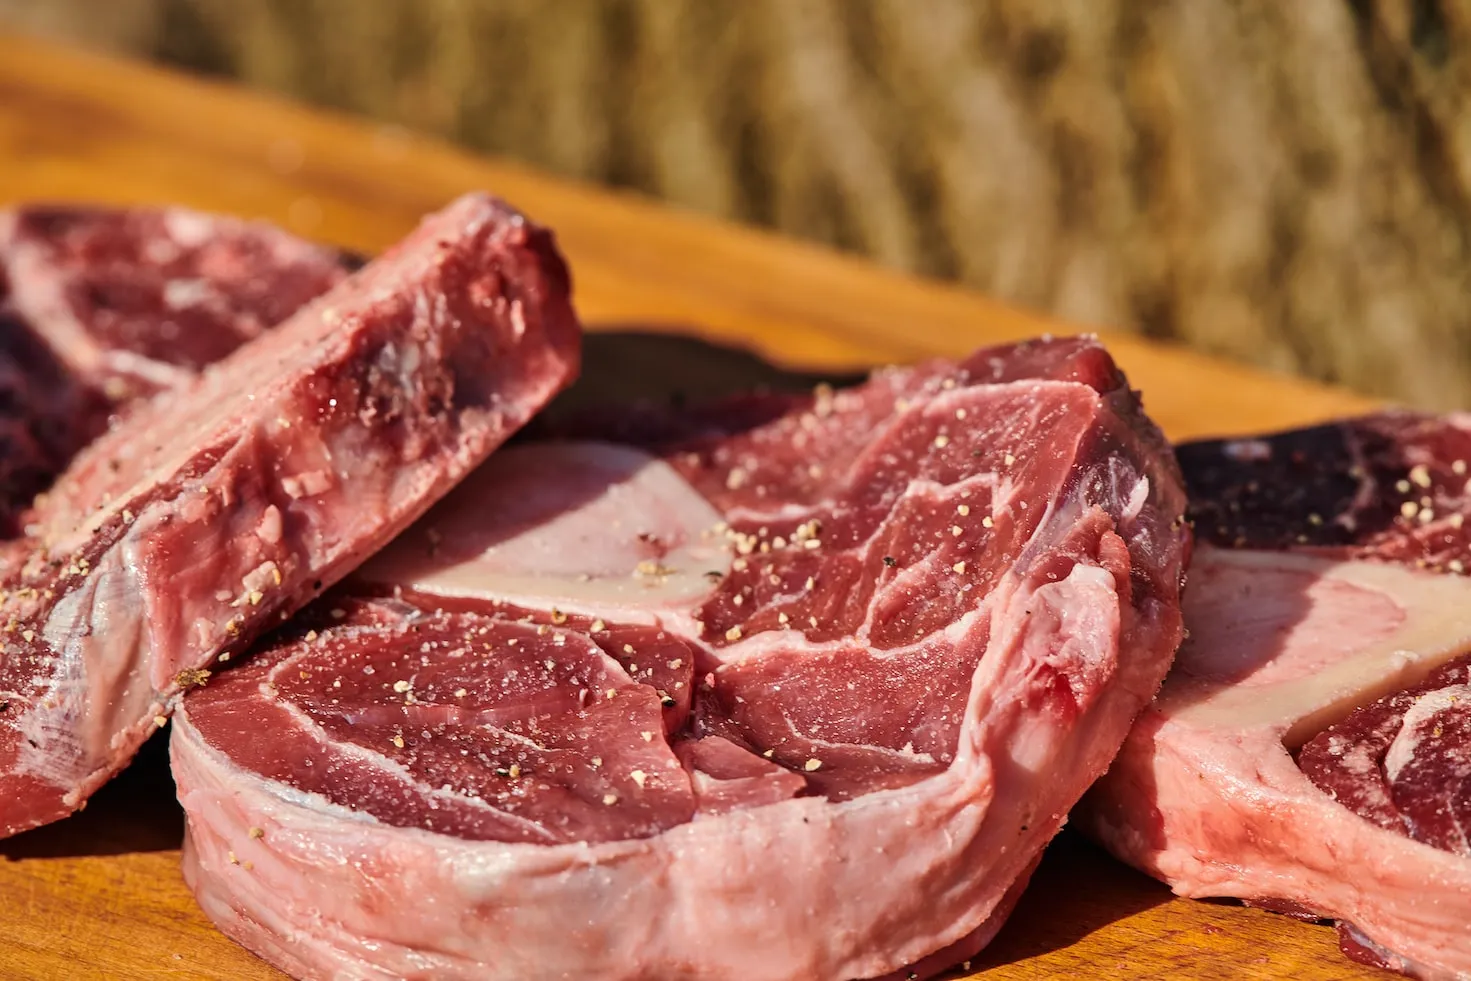 Pebisnis Pangan Wajib Impor Daging Sapi Australia Berkualitas Tinggi